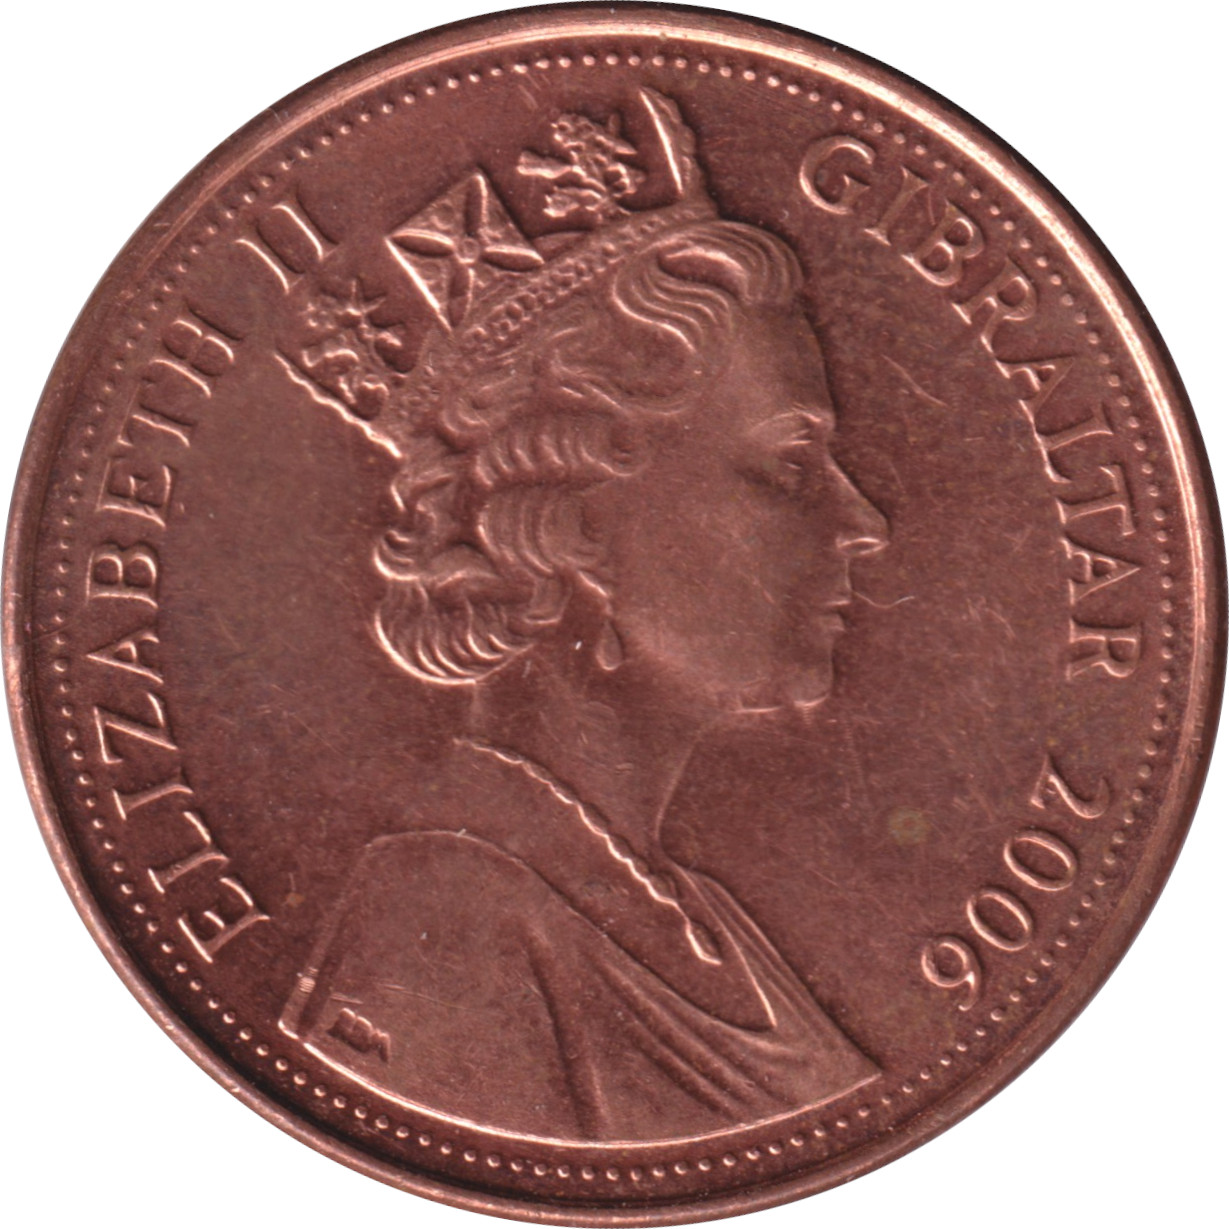 2 pence - Elizabeth II - Grand buste agé